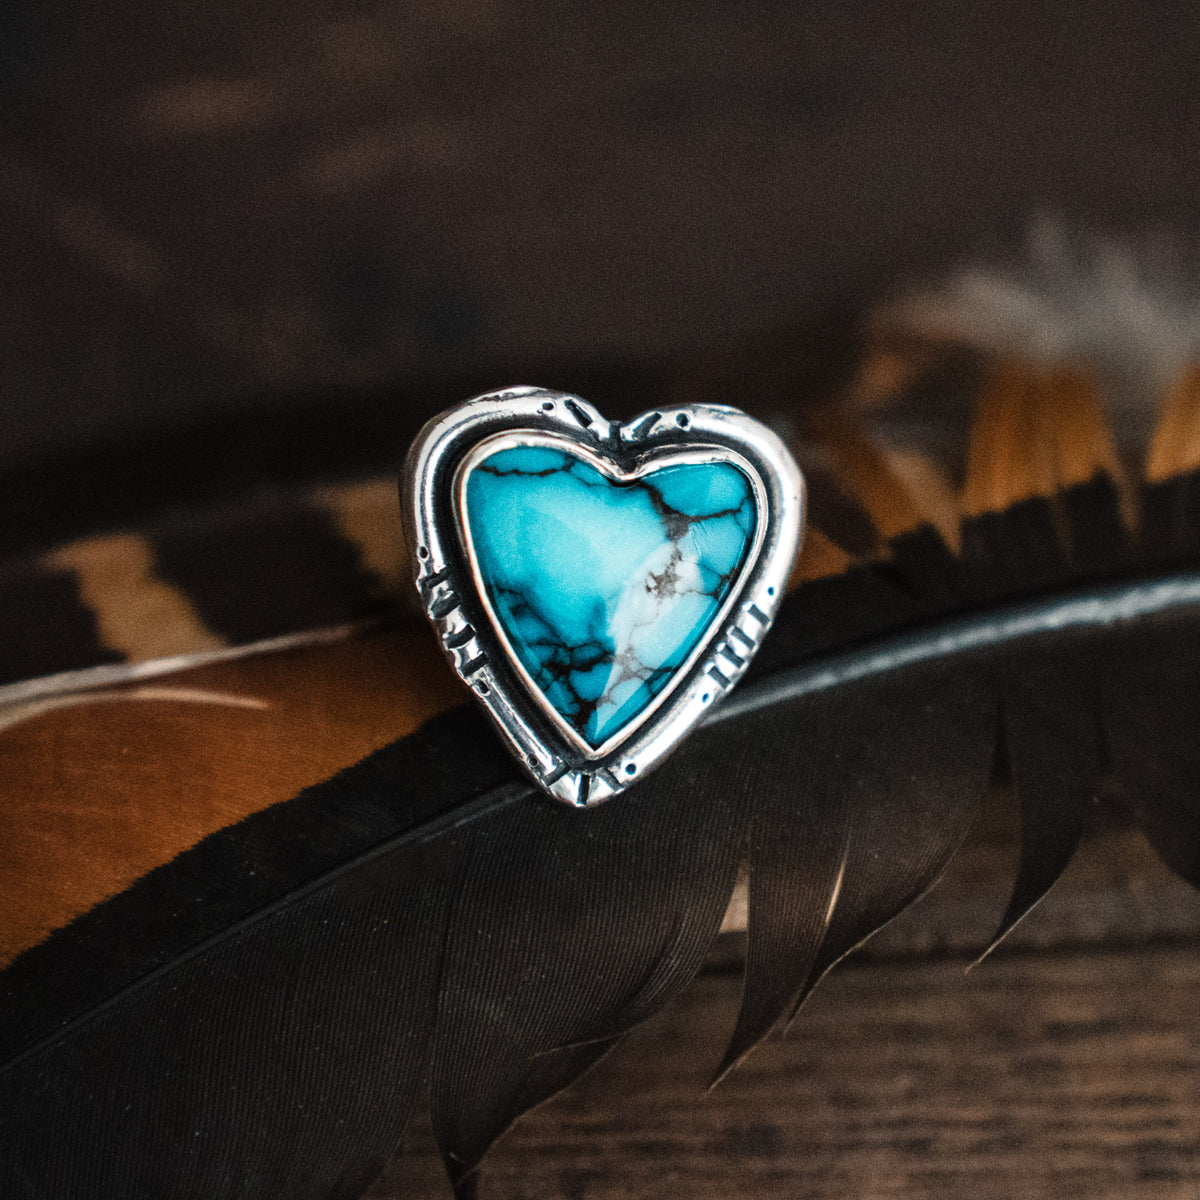 Blue Velvet Turquoise Heart Ring - Size 8